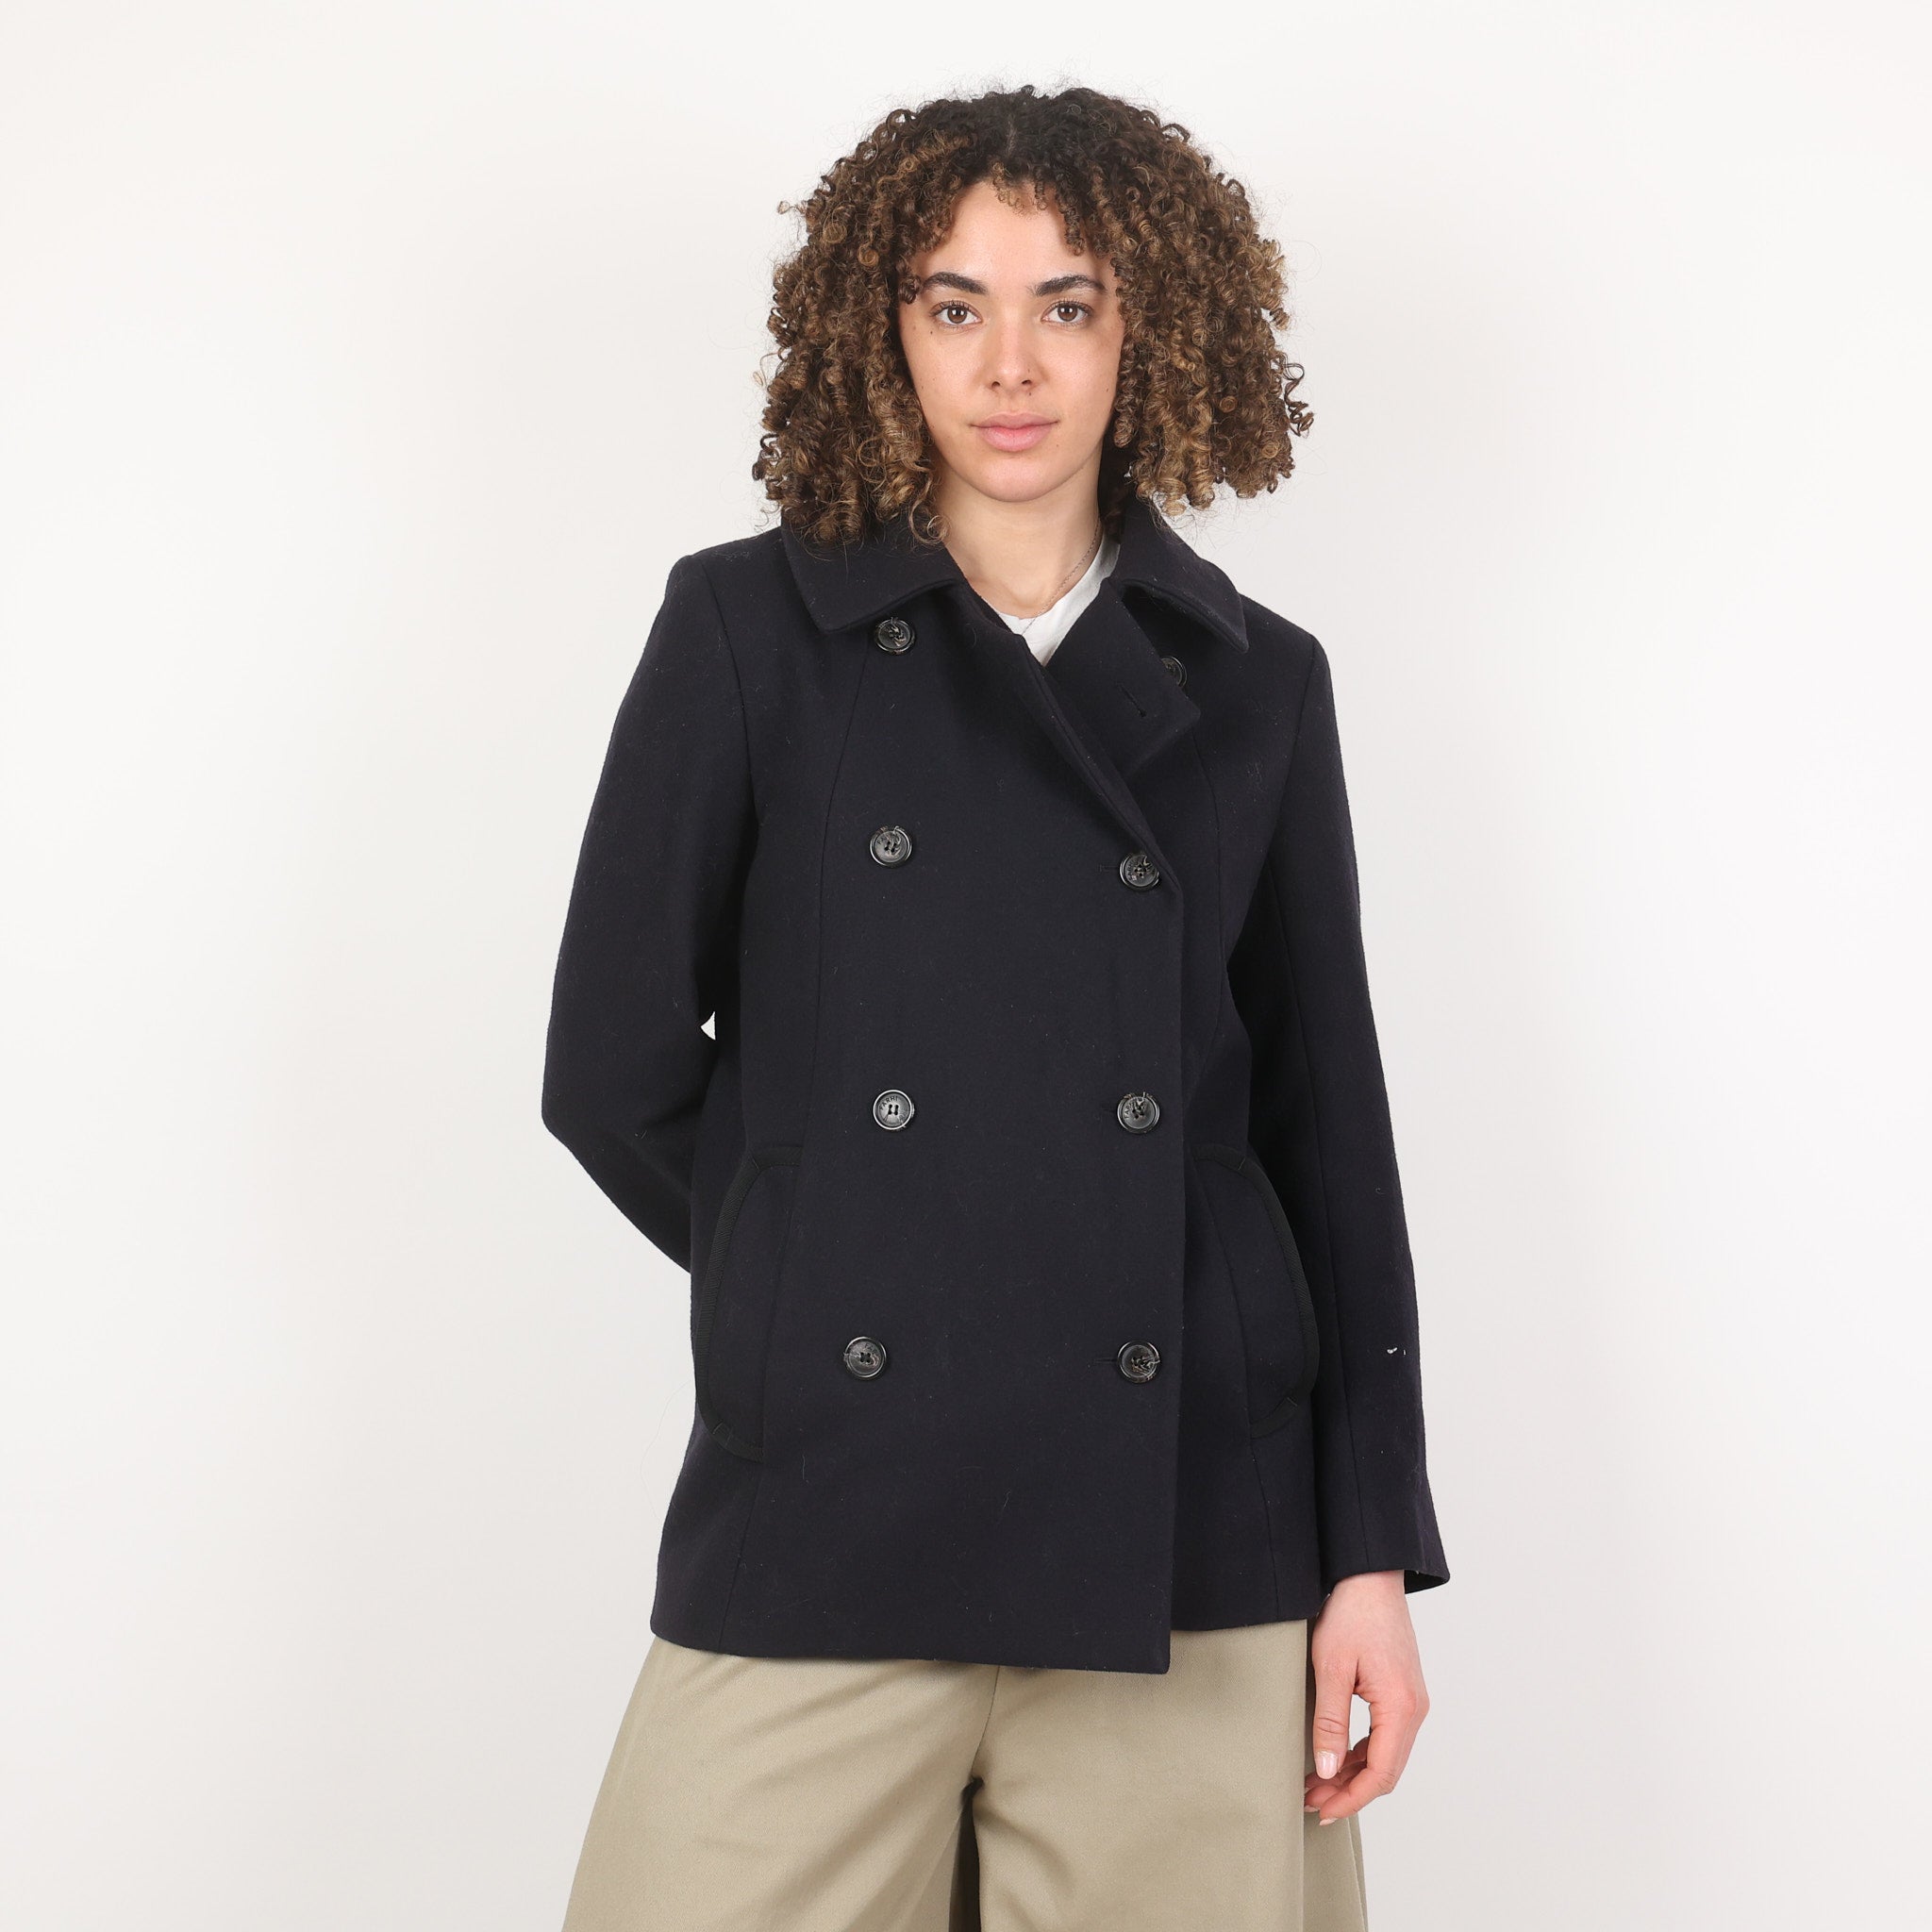 Jacket, UK Size 12